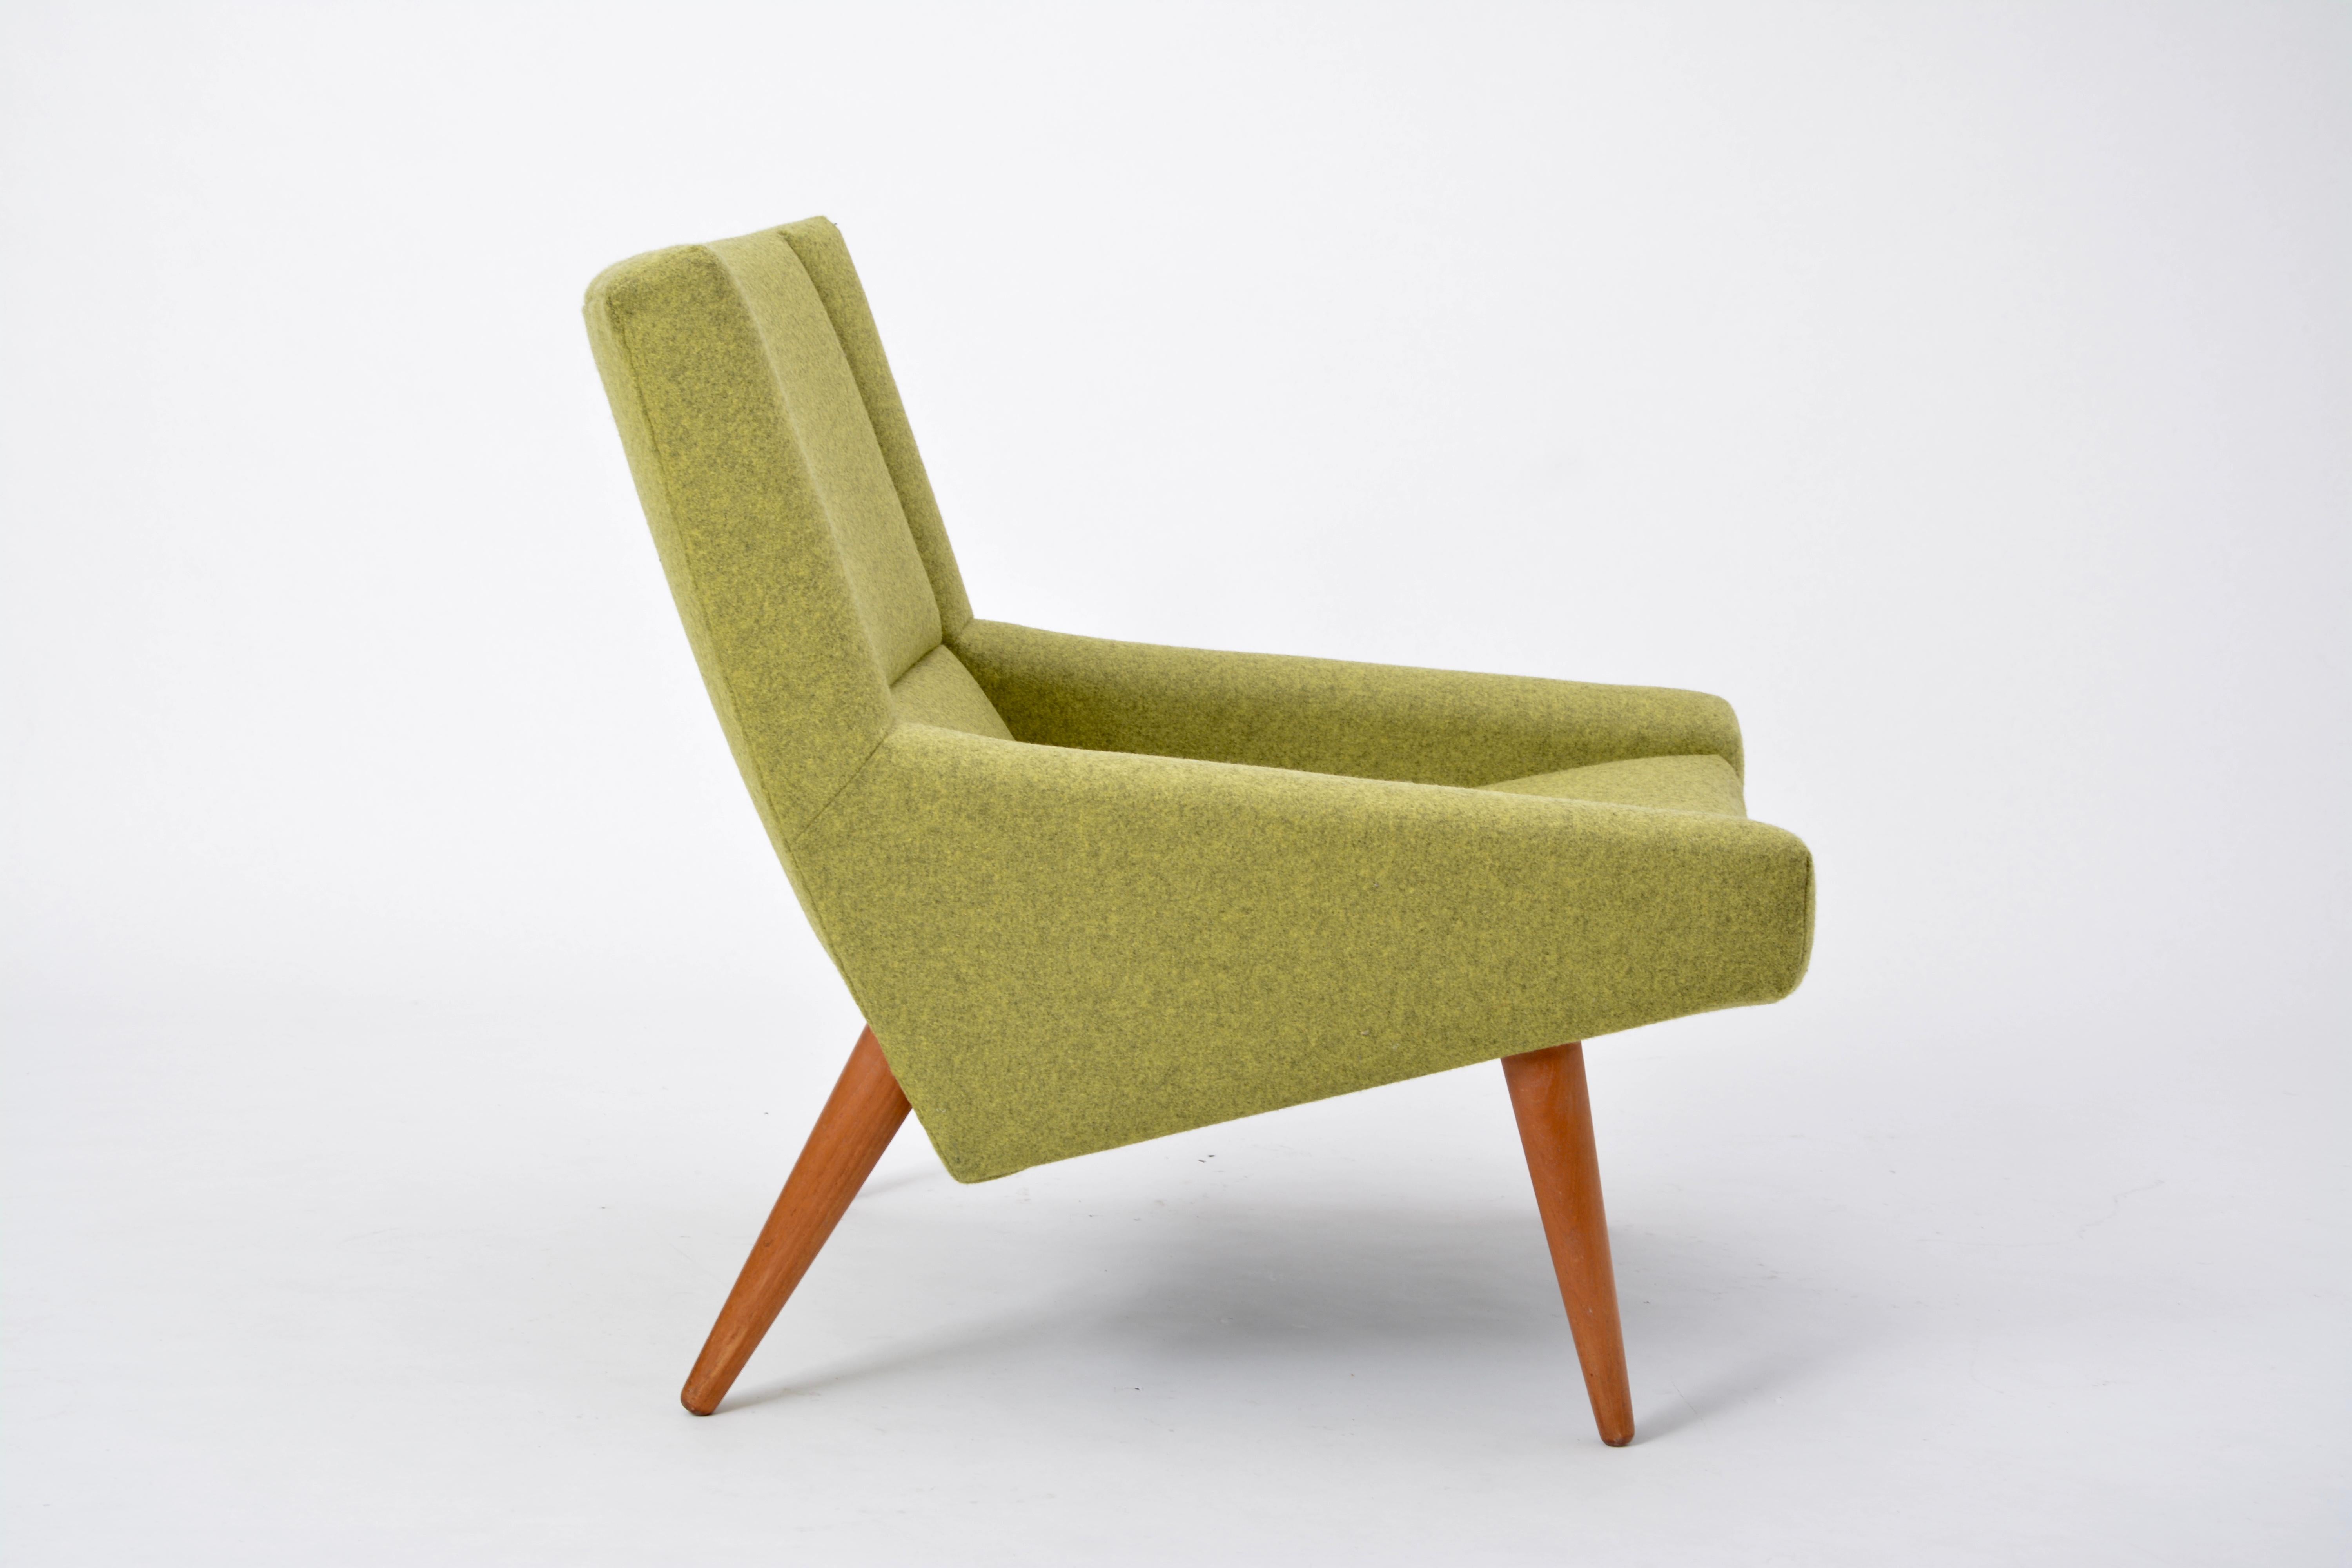 20th Century Danish Mid-Century Modern Model 50 chair by Illum Wikkelsø for Søren Willadsen